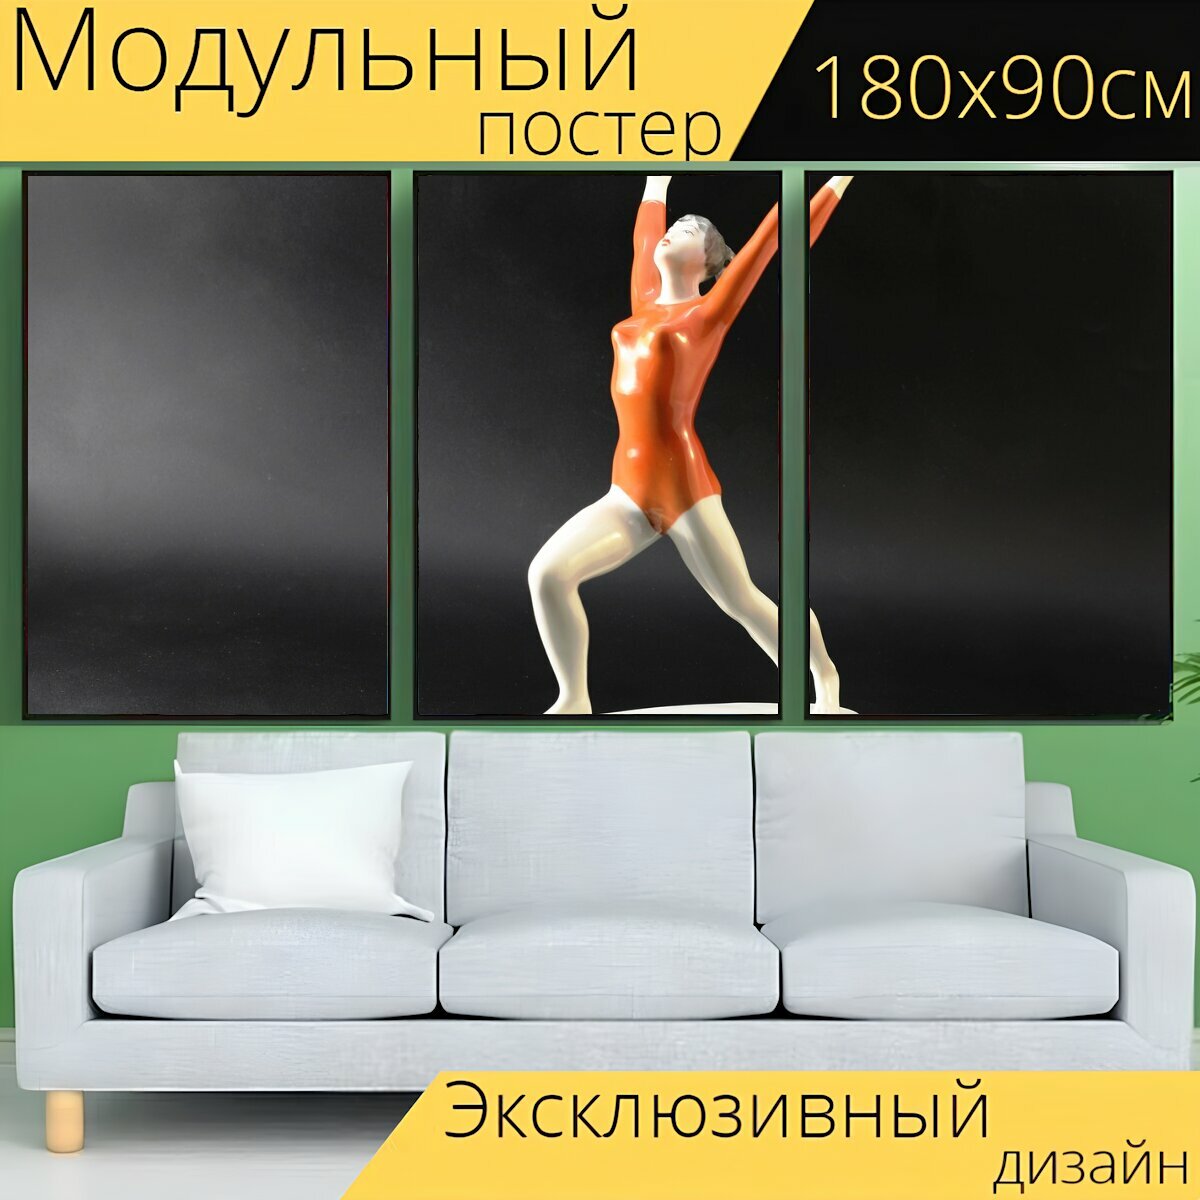 Модульный постер "Гимнастка, балерина, прожектор" 180 x 90 см. для интерьера